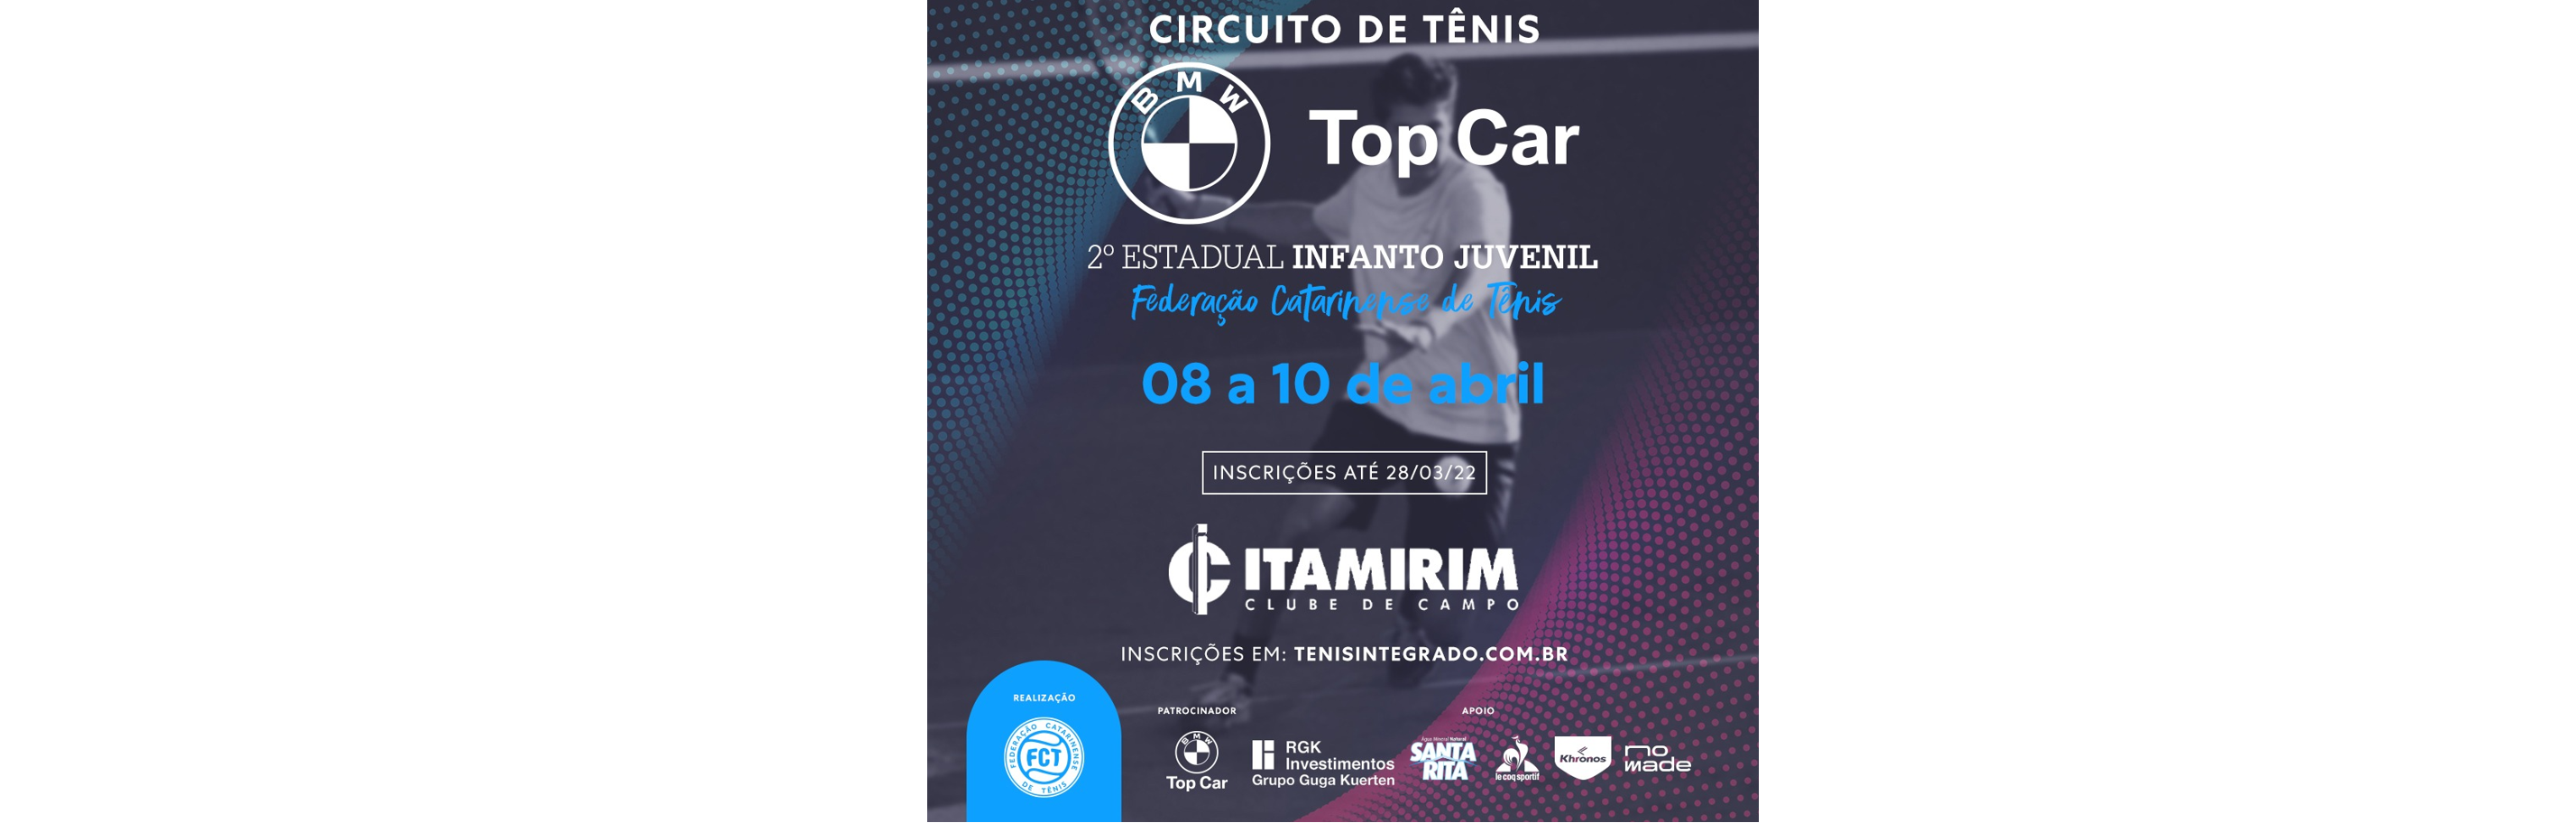 INSCRIÇÕES ABERTAS - CIRCUITO BMW TOP CAR INFANTO JUVENIL DE TÊNIS (2ª ETAPA FCT)